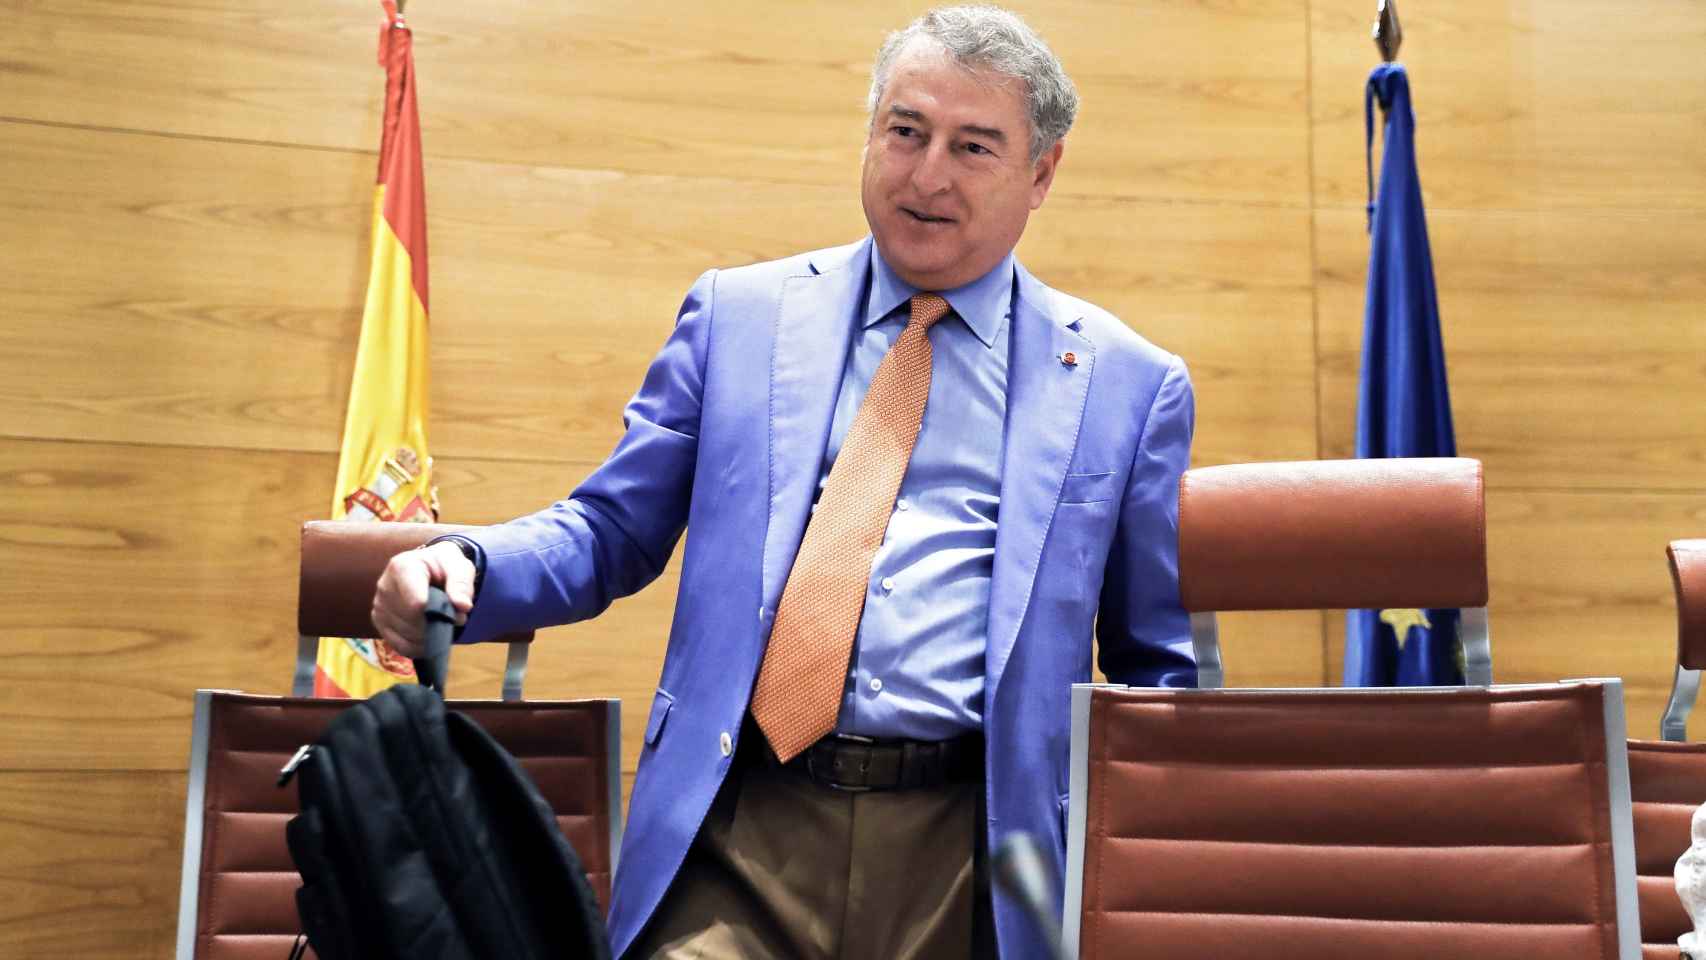 El presidente del Consejo de Administración de RTVE, José Antonio Sánchez, en la Comisión Mixta de Control Parlamentario.